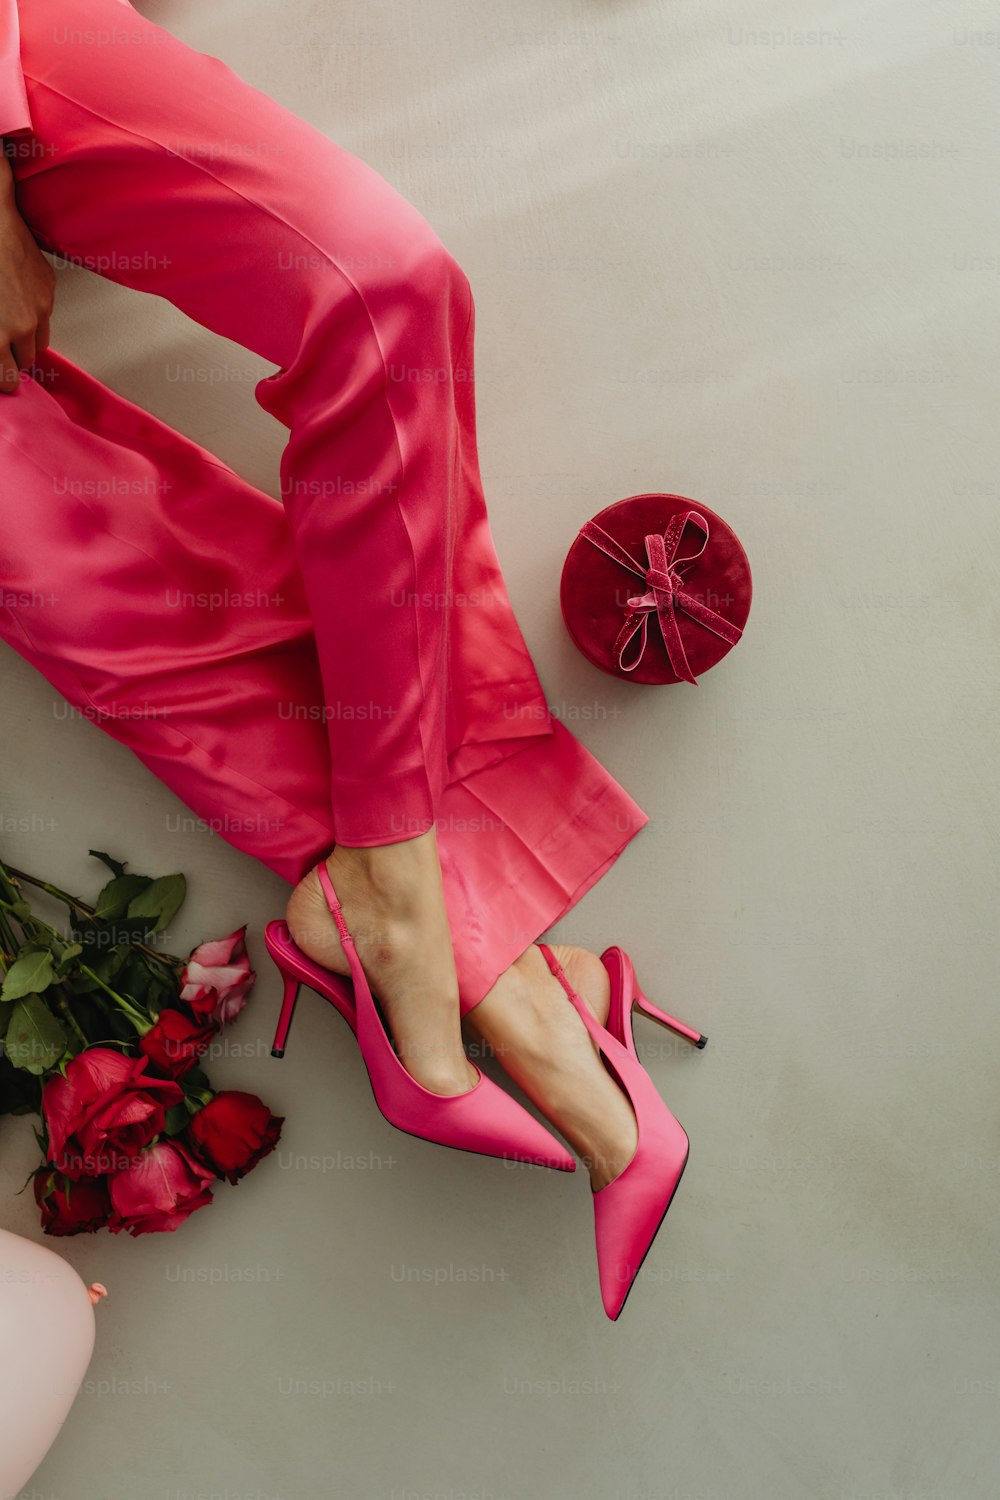 장미 꽃다발 옆에 분홍색 신발을 신은 여자의 발